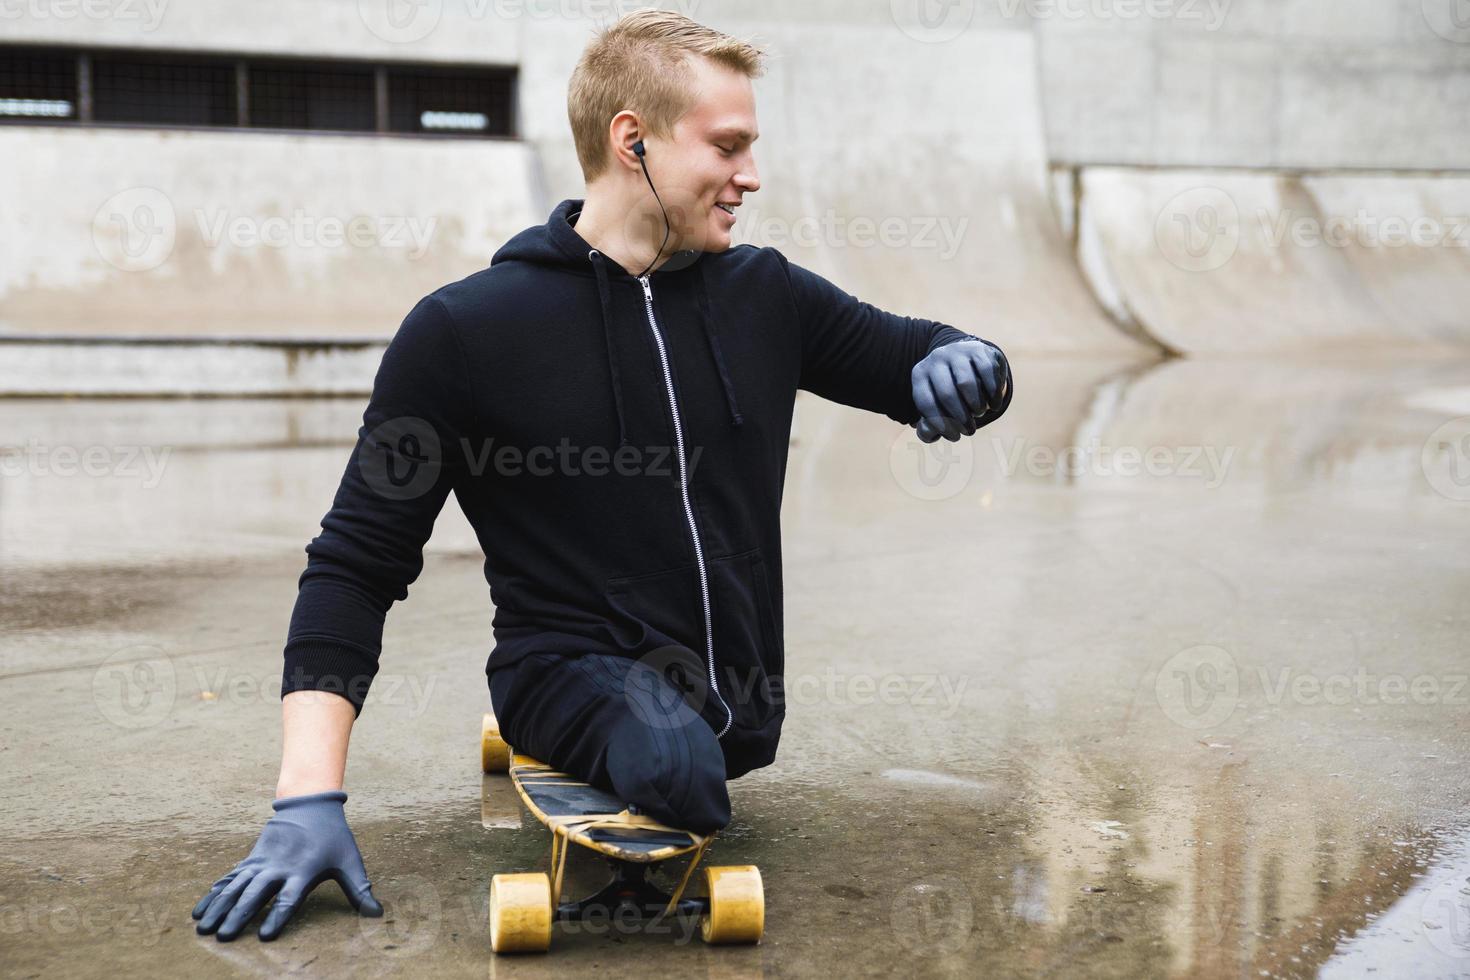 cara deficiente motivado com um longboard no skatepark foto